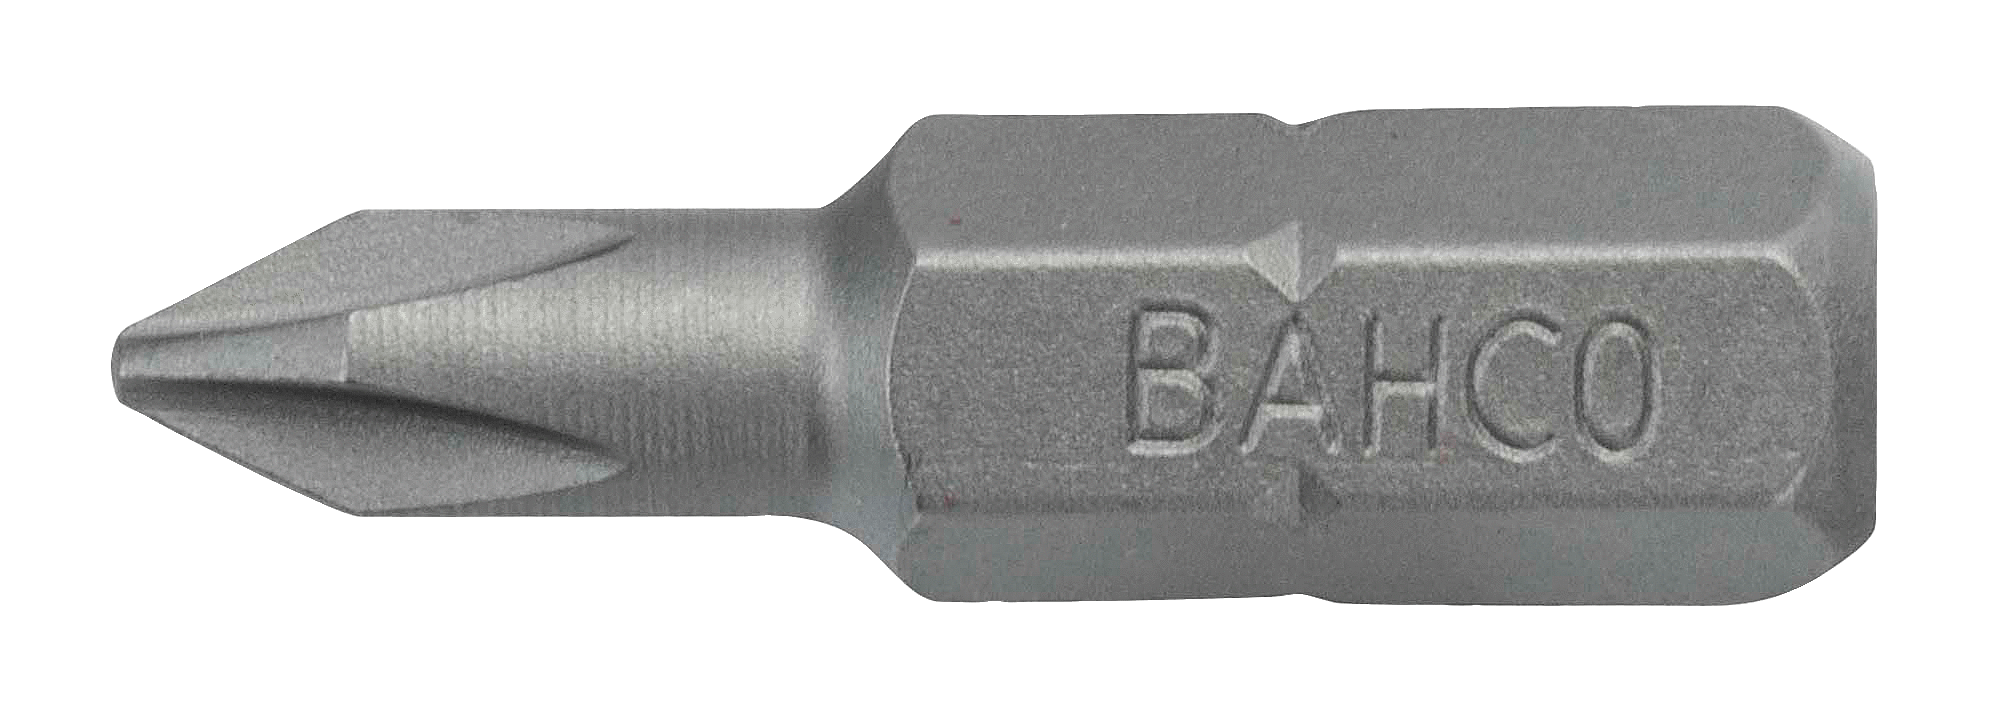 картинка Стандартные биты для отверток Phillips, 25 мм BAHCO 59S/PH3-IPB от магазина "Элит-инструмент"